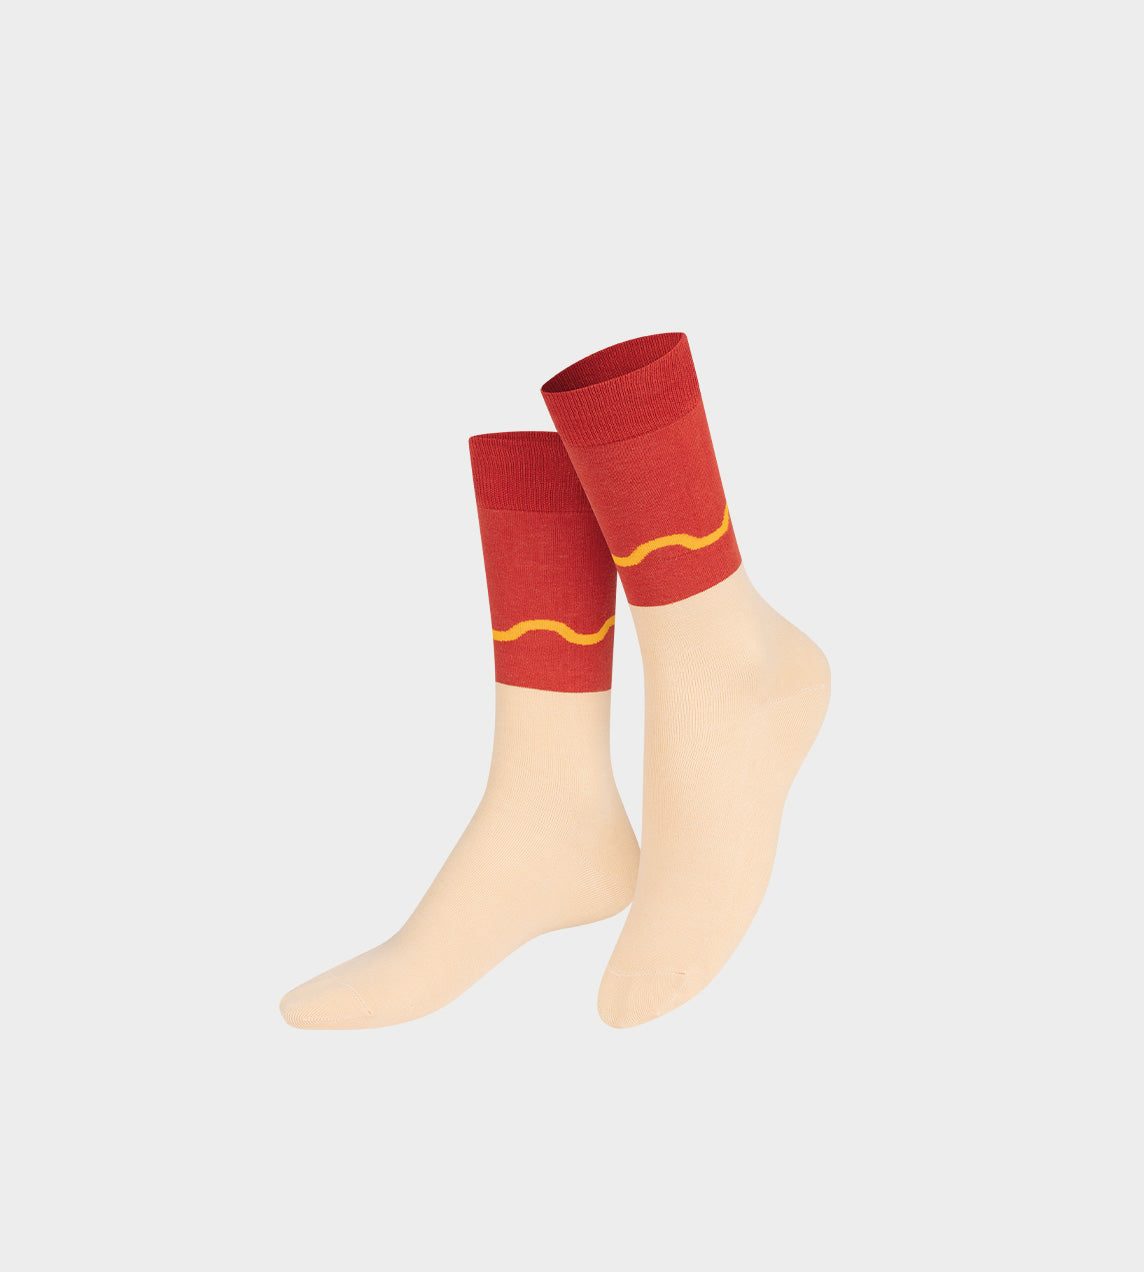 EAT MY SOCKS - Hot Dog Socks - 1 Pair – WDLT117